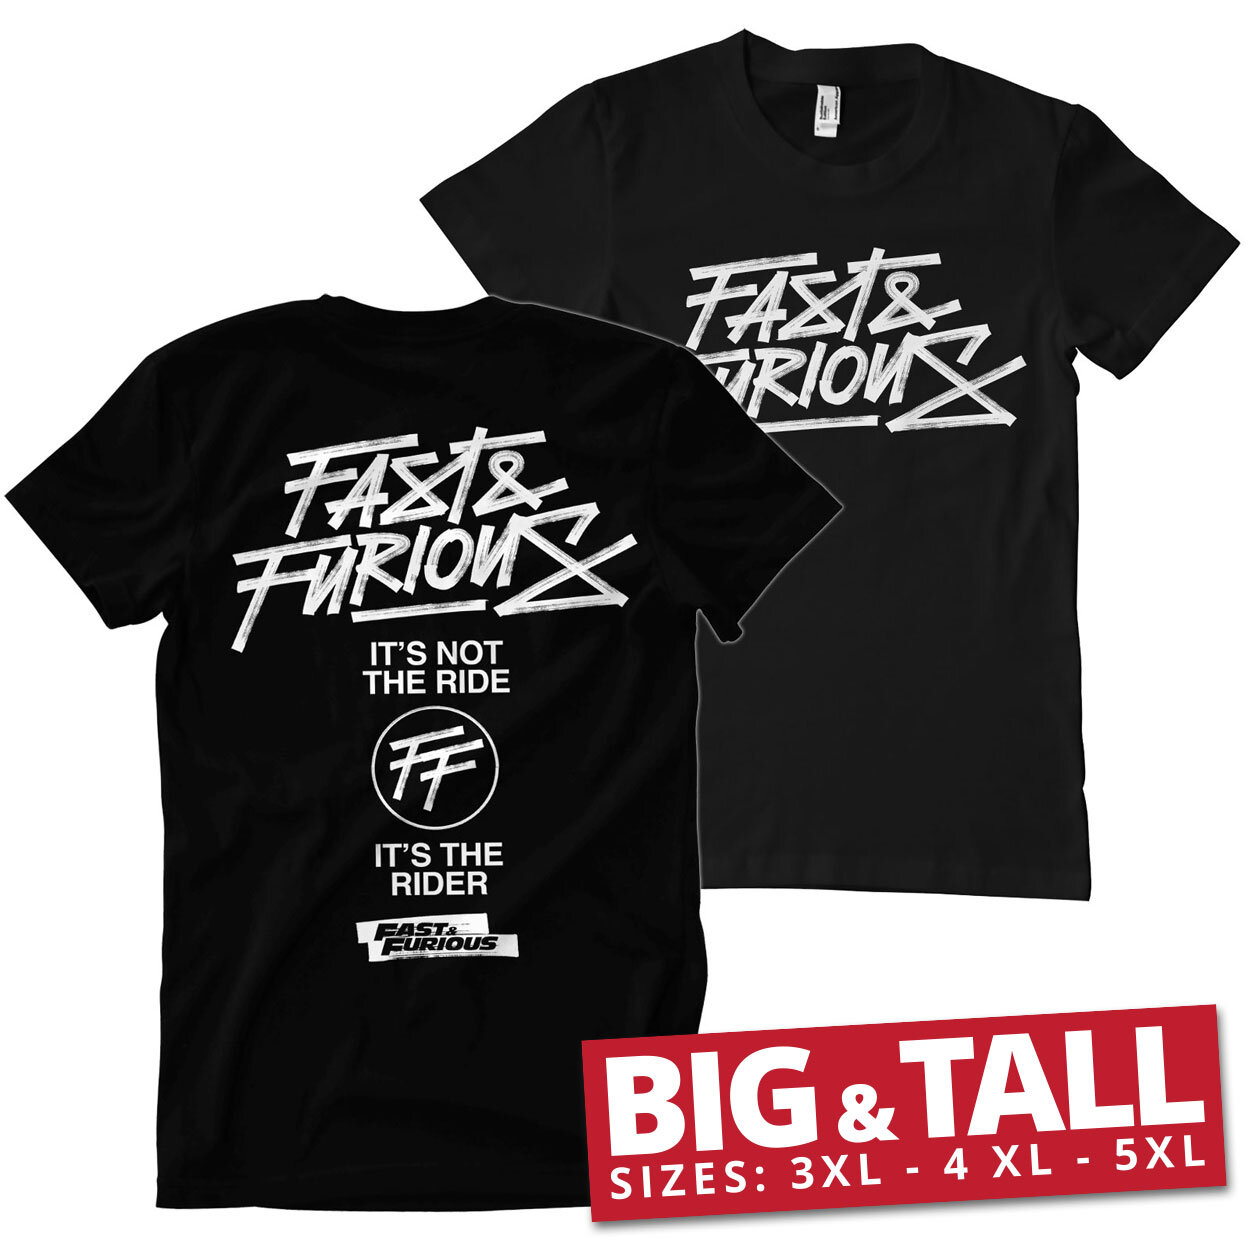 Fast & Furious Rider Big & Tall T-Shirt